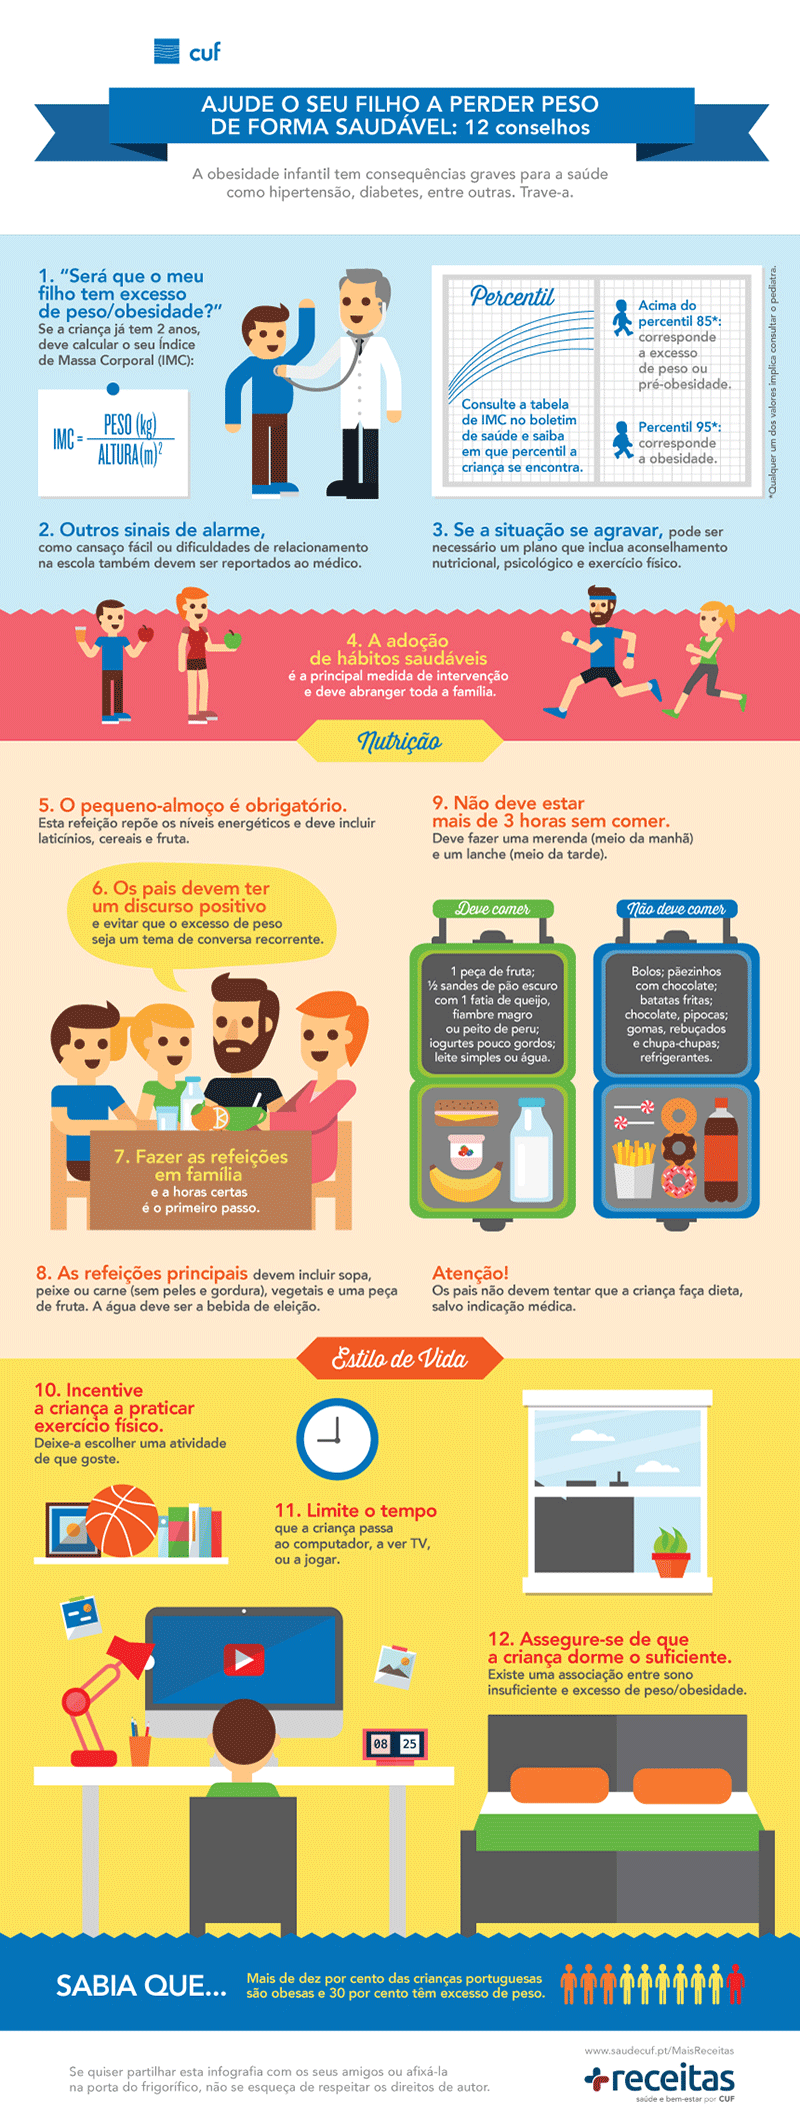 Infografia sobre estratégias para ajudar filho a perder peso de forma saudável